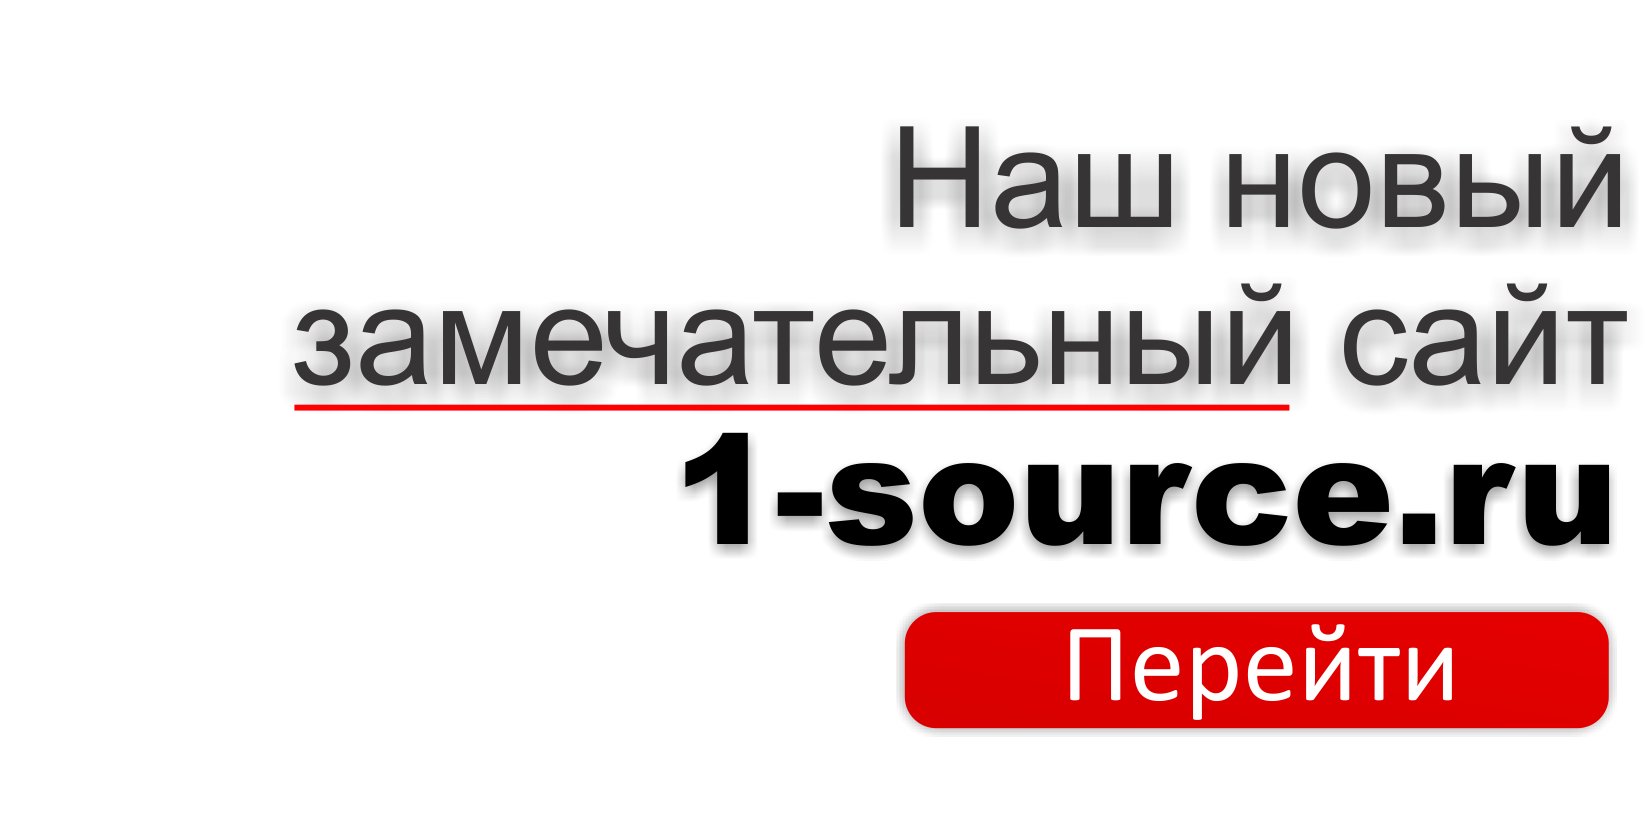 Нажмите для перехода на новый сайт: 1-source.ru